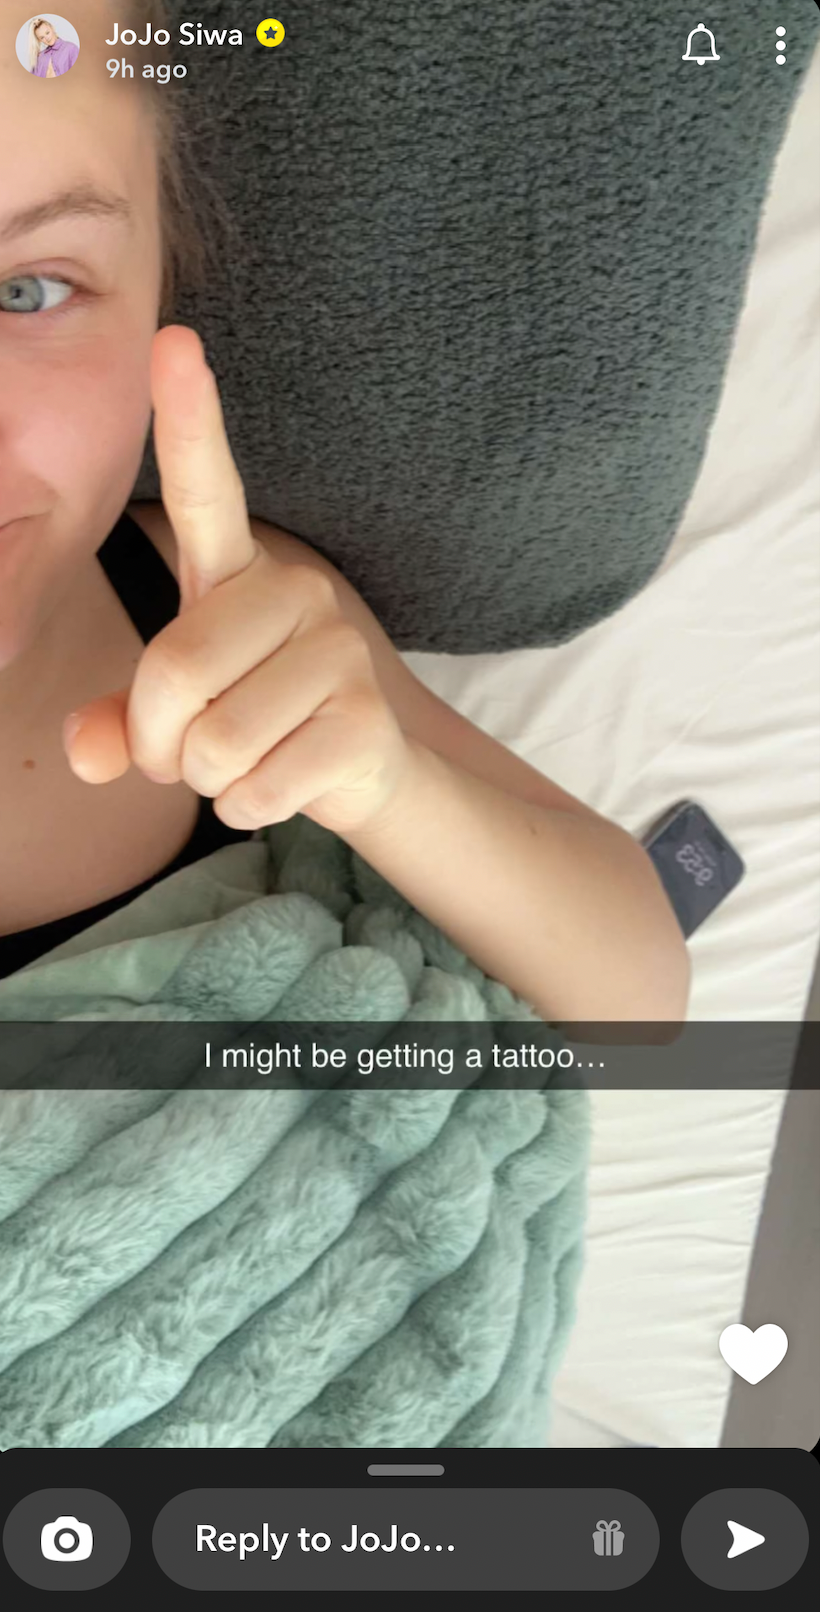 JoJo Siwa debuts first tattoo